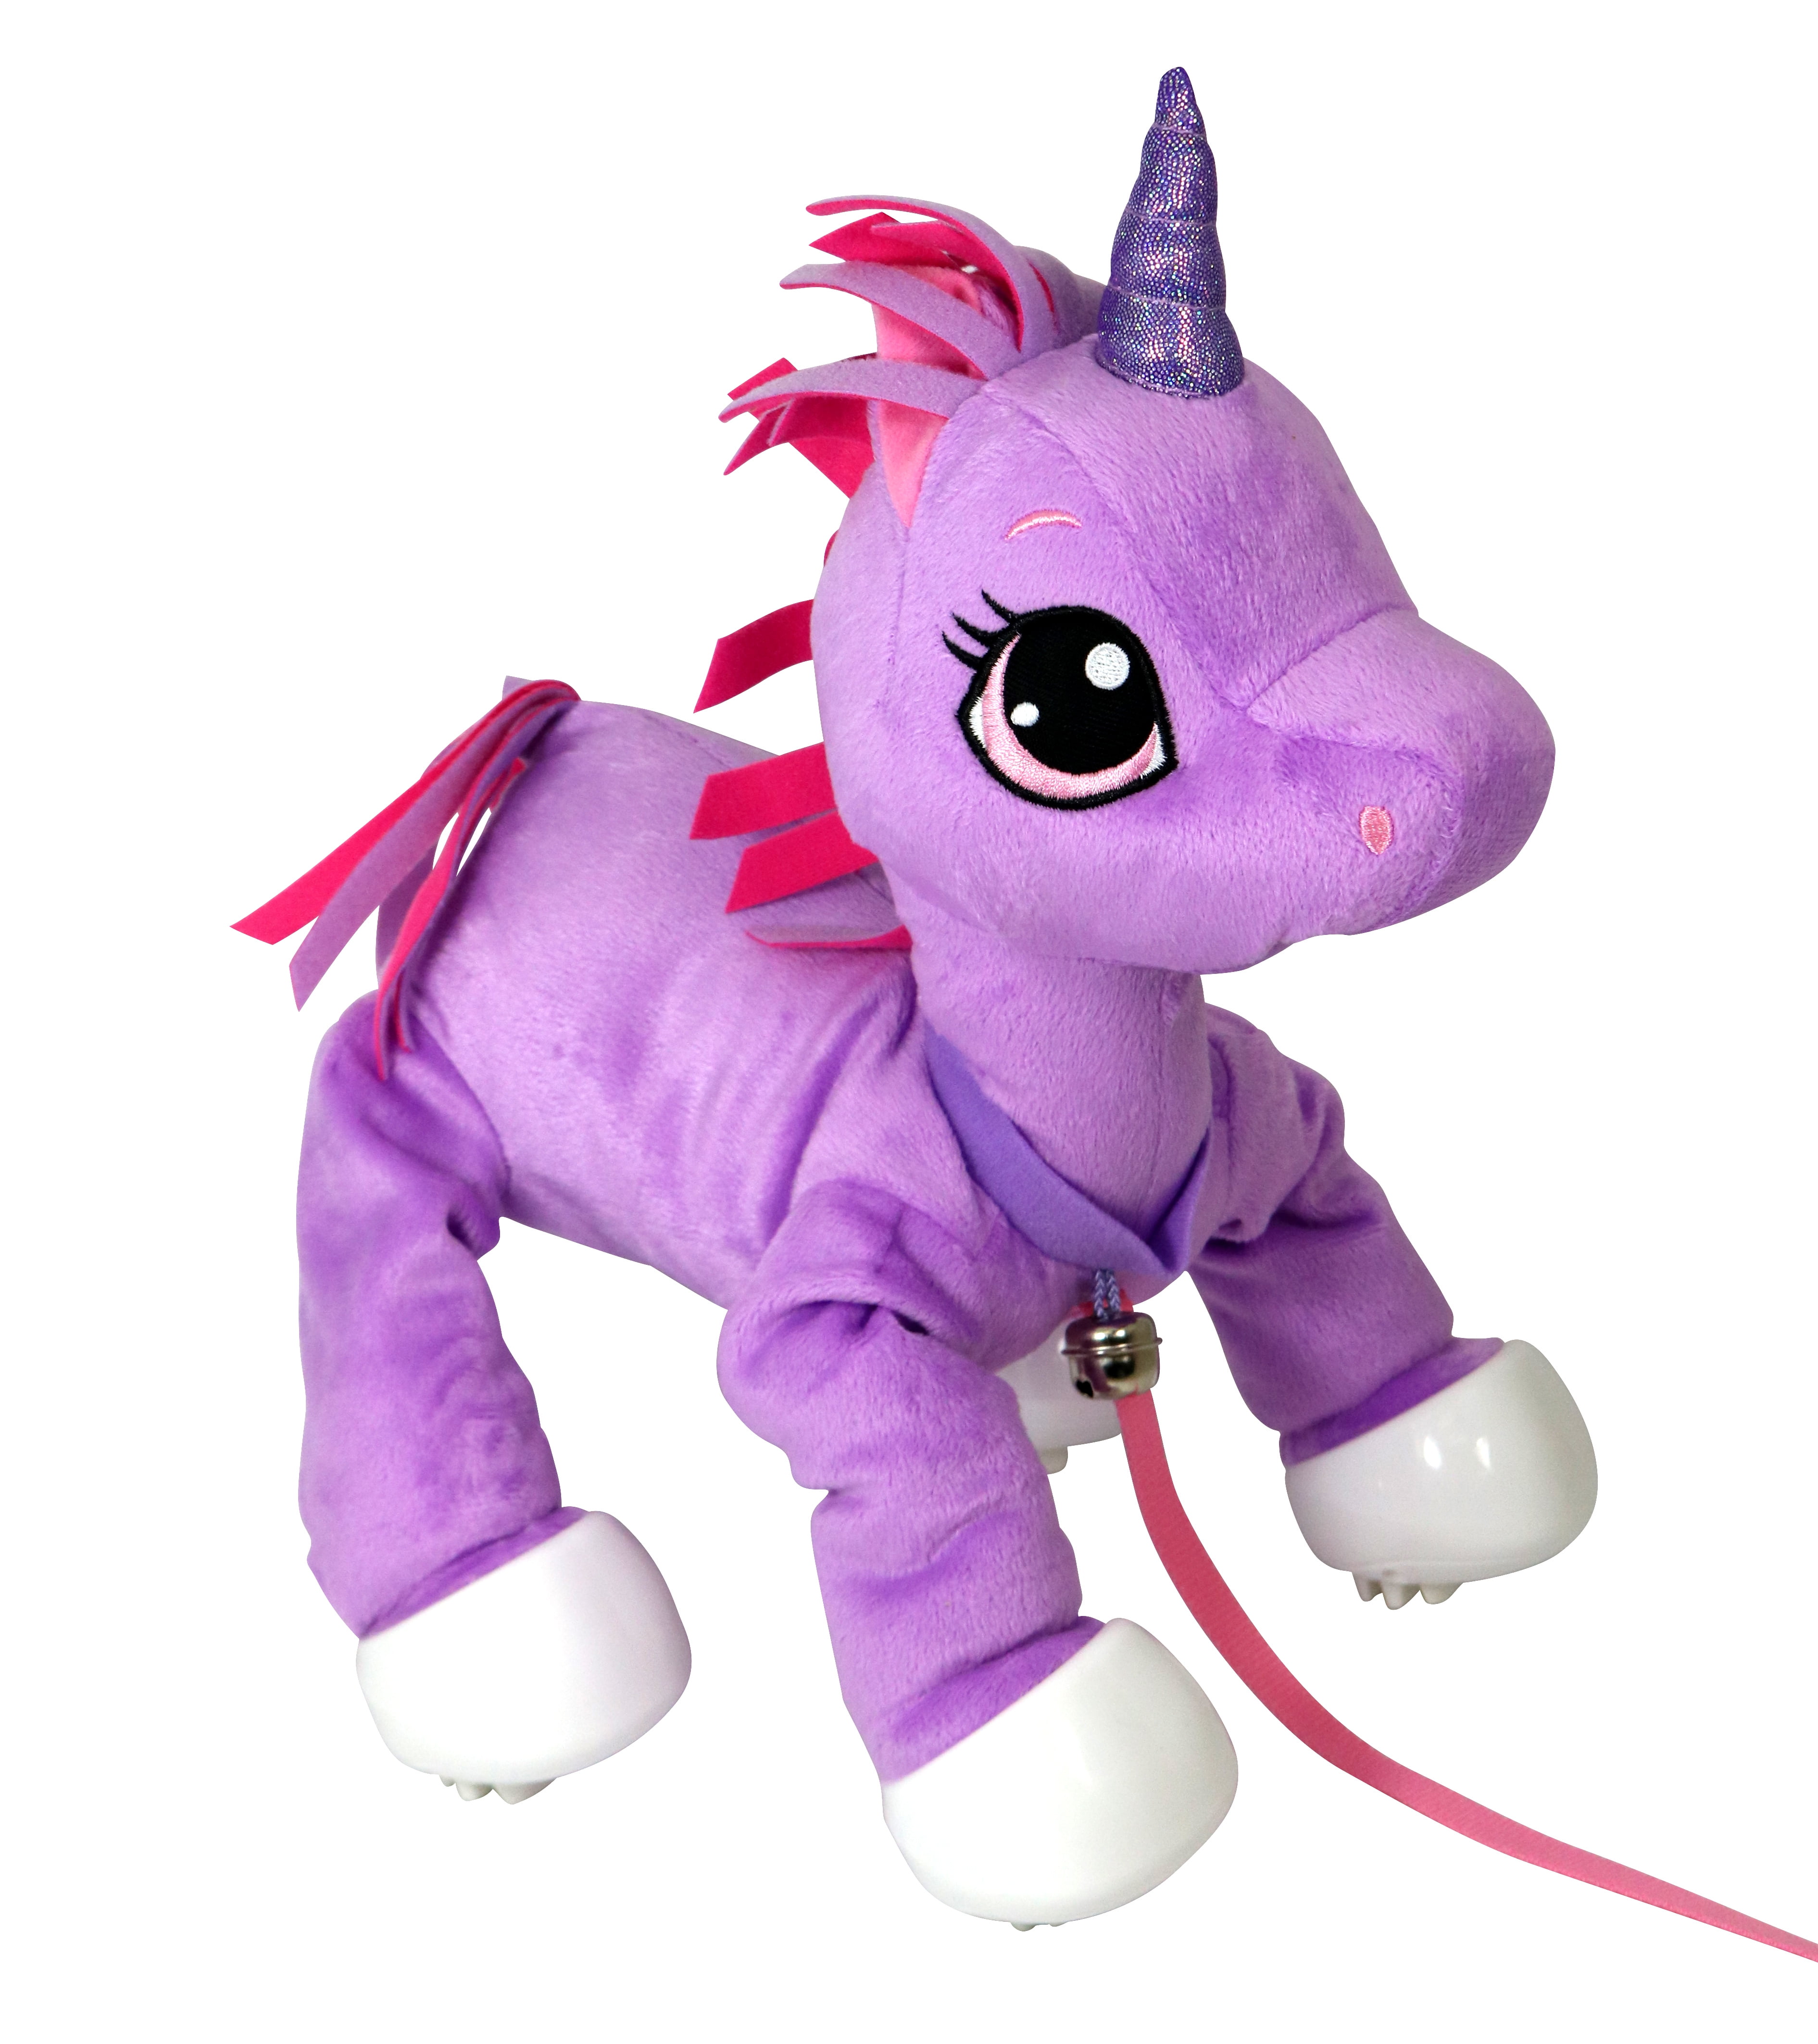 unicorn on a leash toy